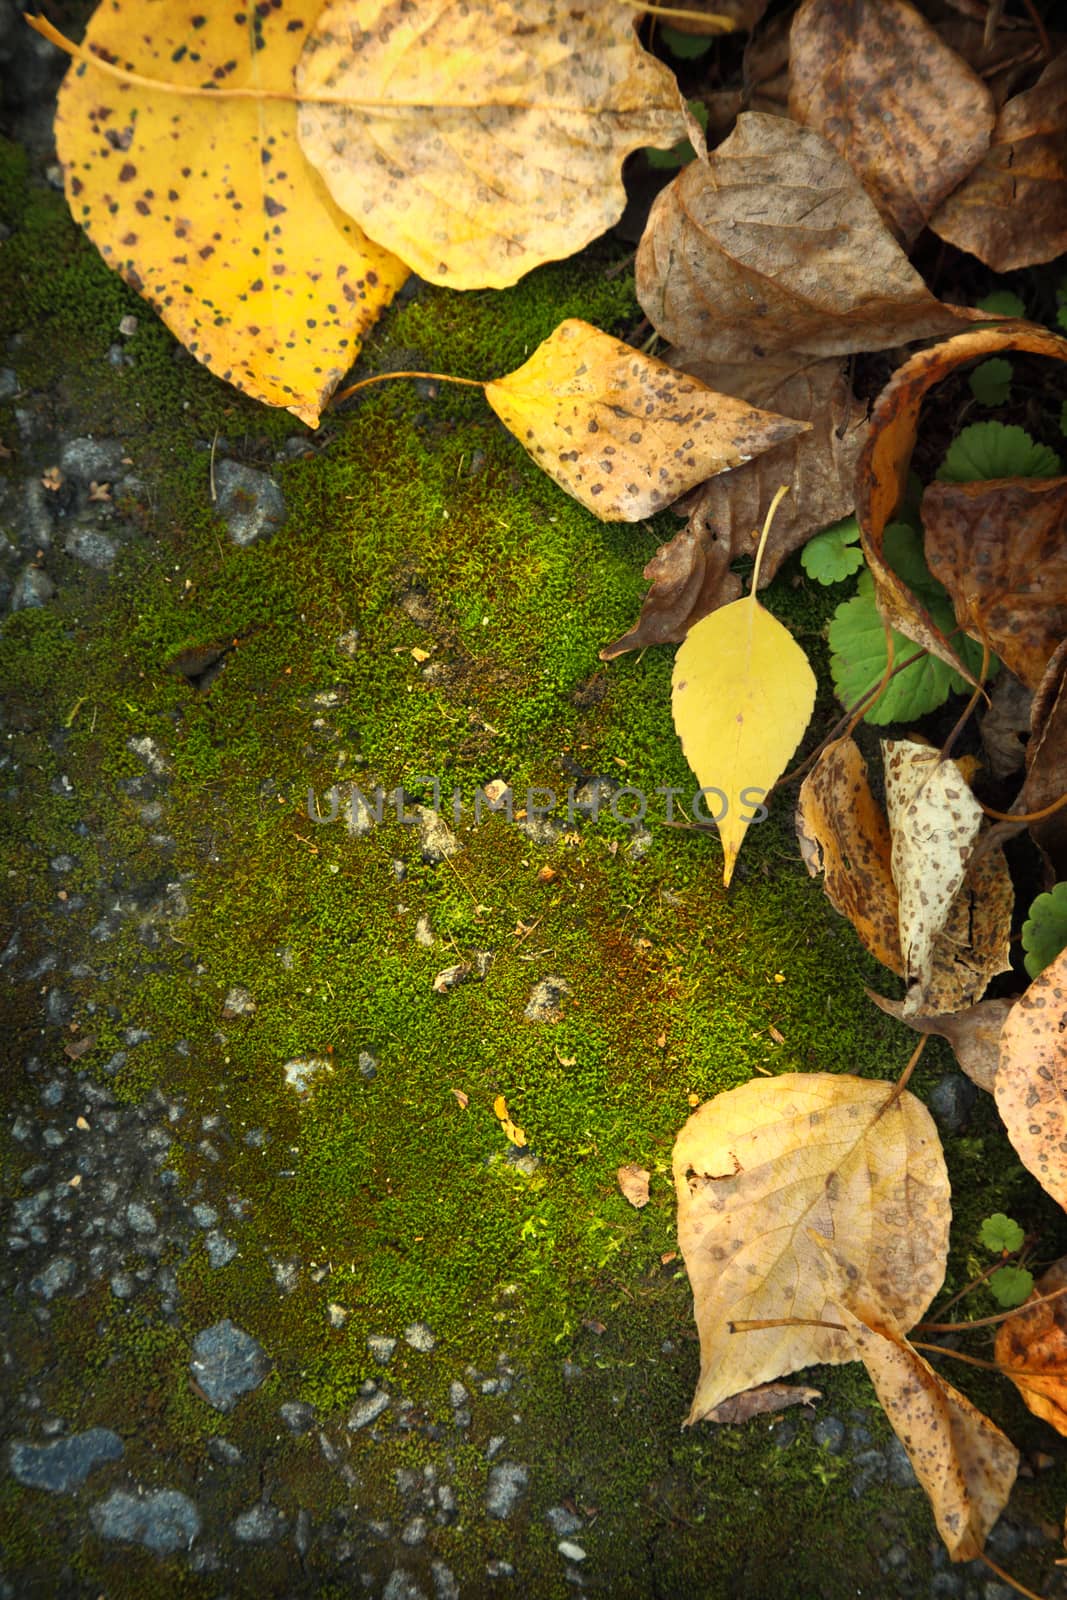 Autumn foliage on moss ground